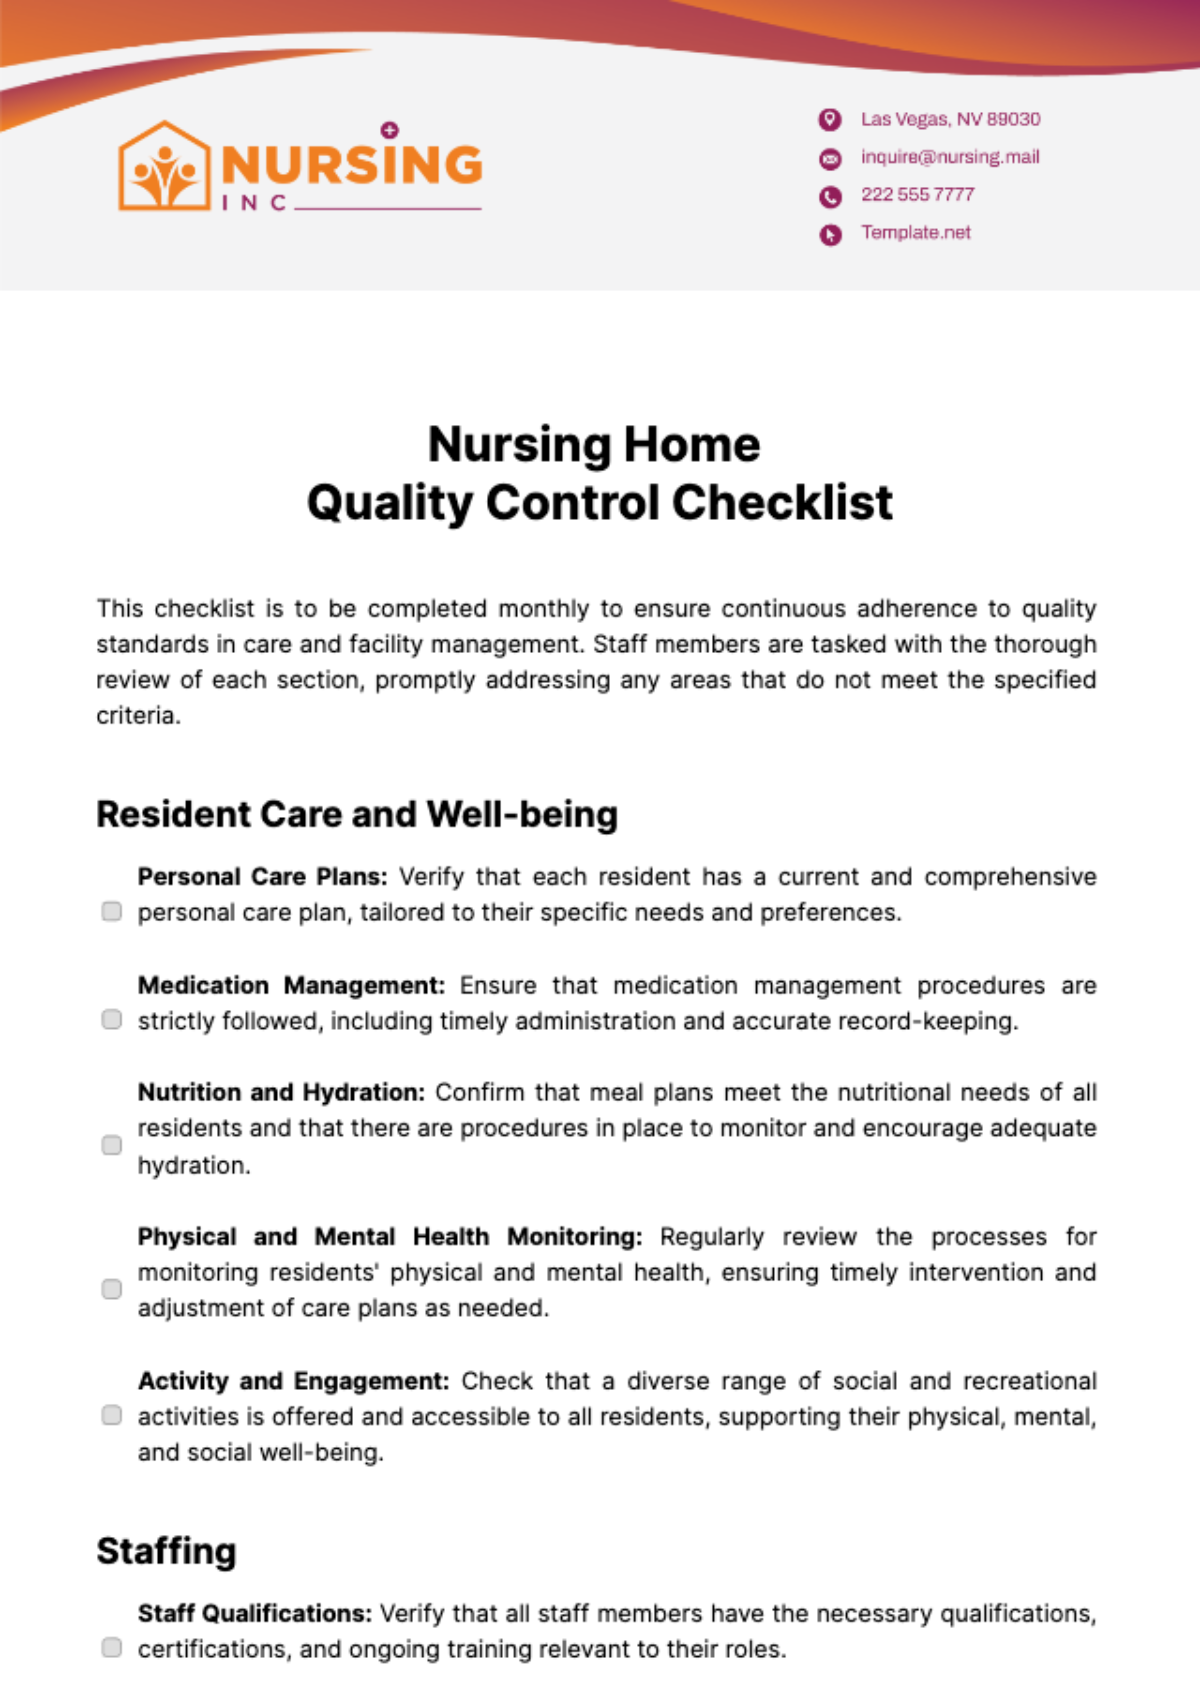 Nursing Home Quality Control Checklist Template